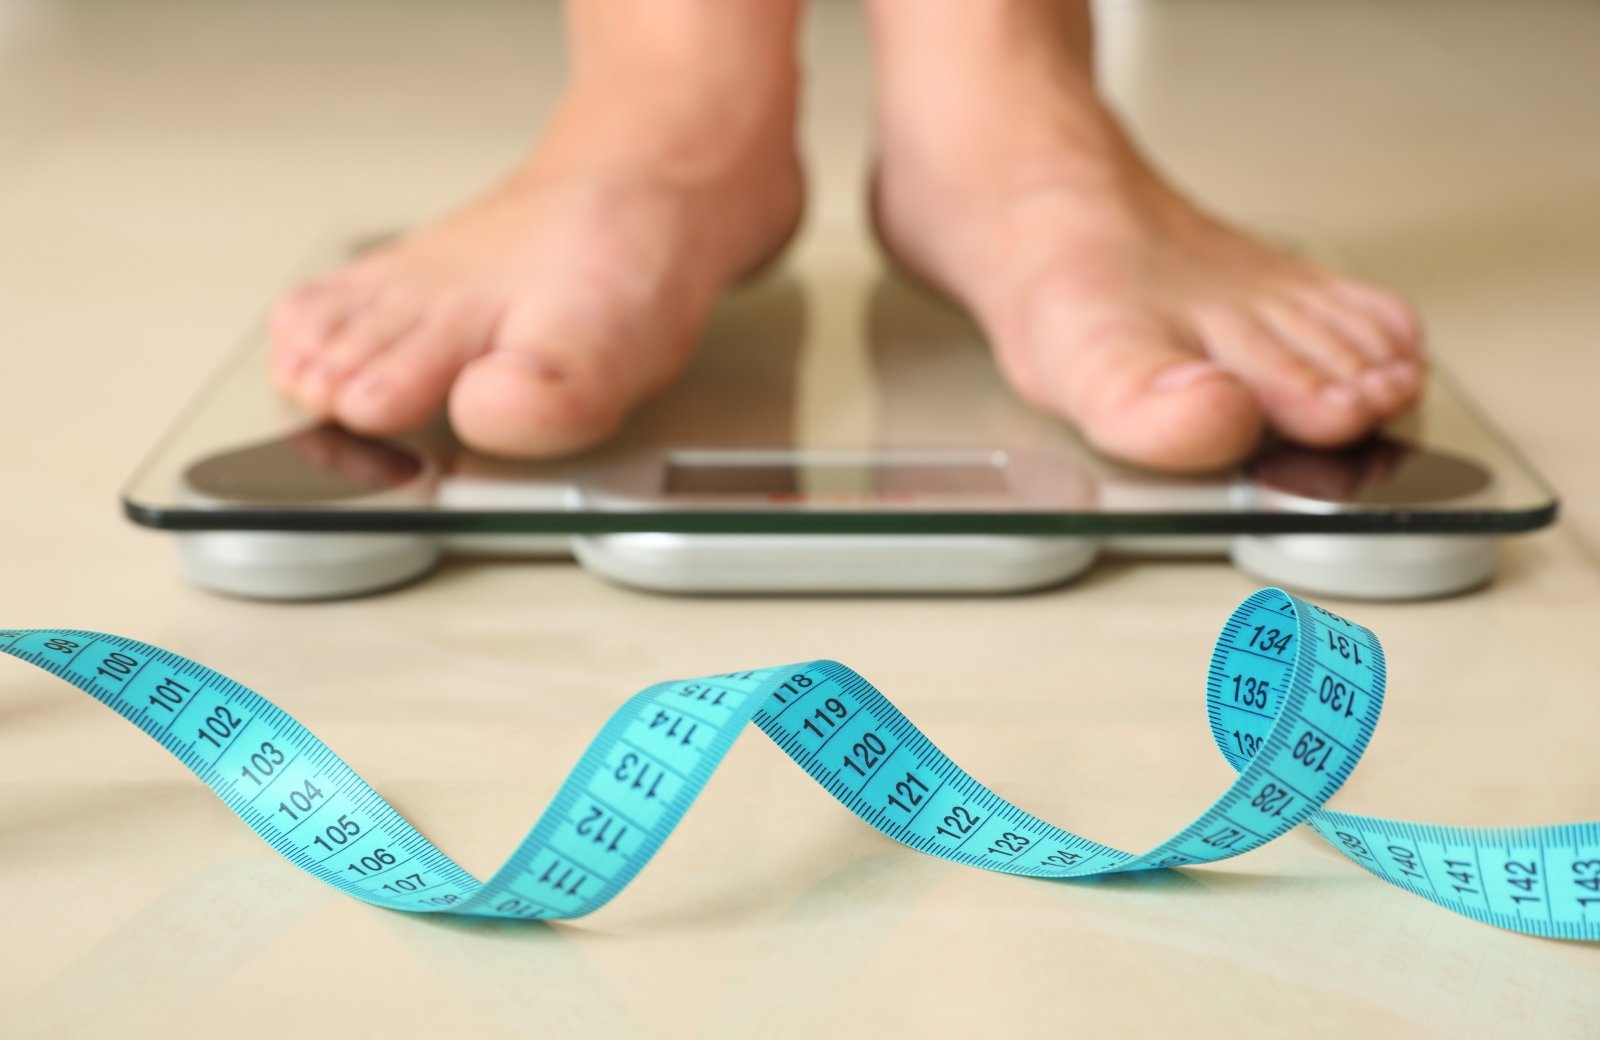 kulkšnies svoris padės numesti svorį